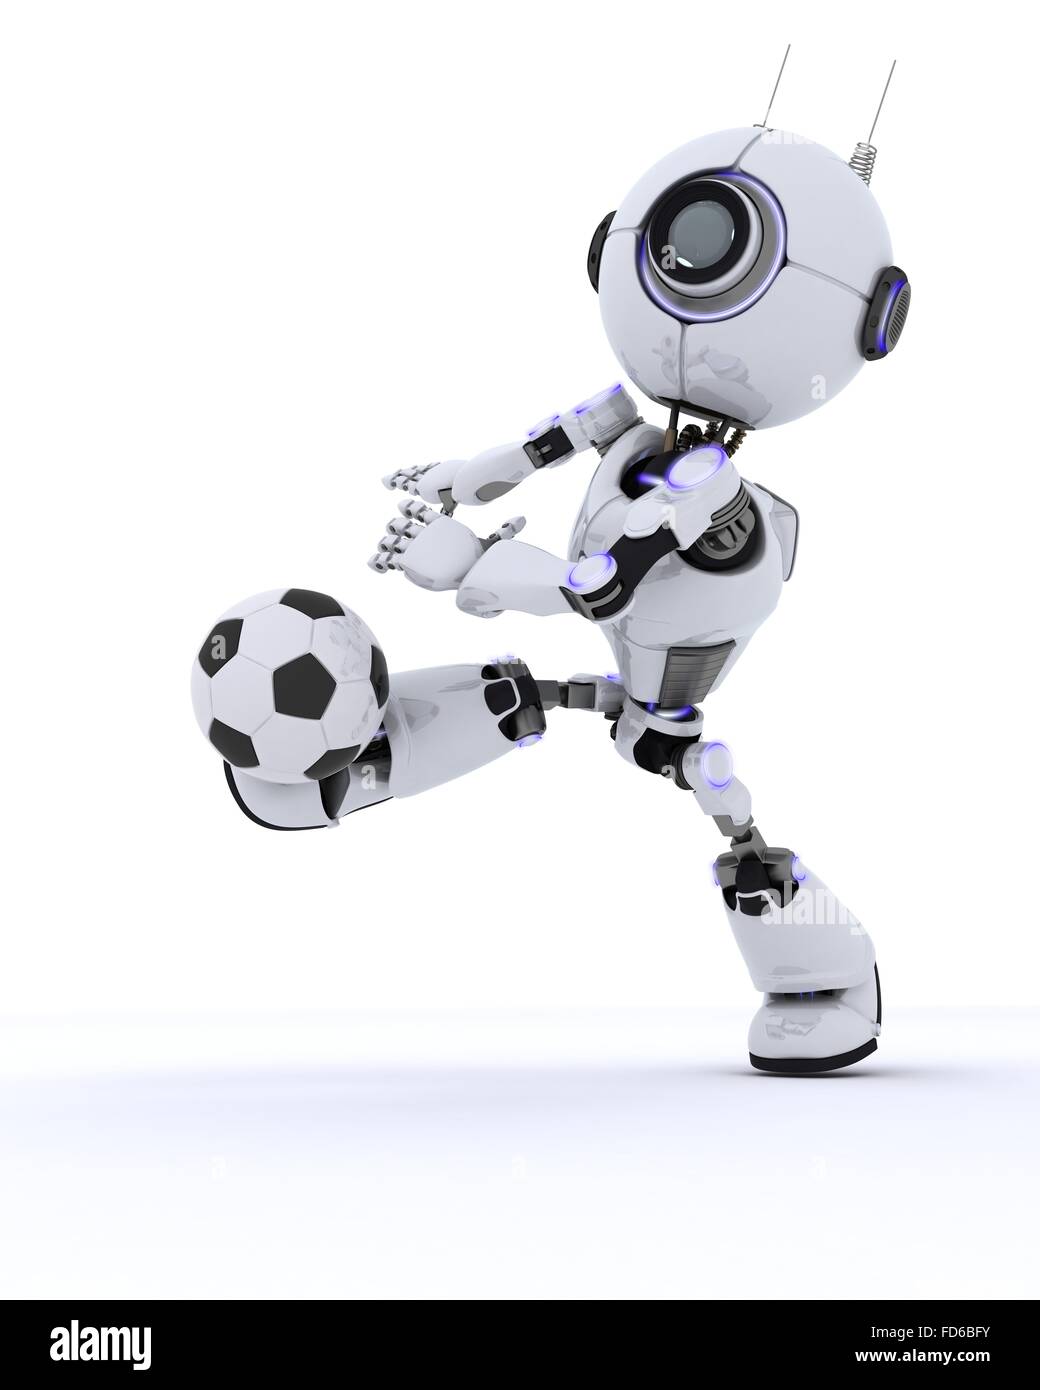 Роботы играют в футбол. Robot igrayut v footboal. Робот футбол робот футбол. Malenkiy roboti igrayut v footbol.